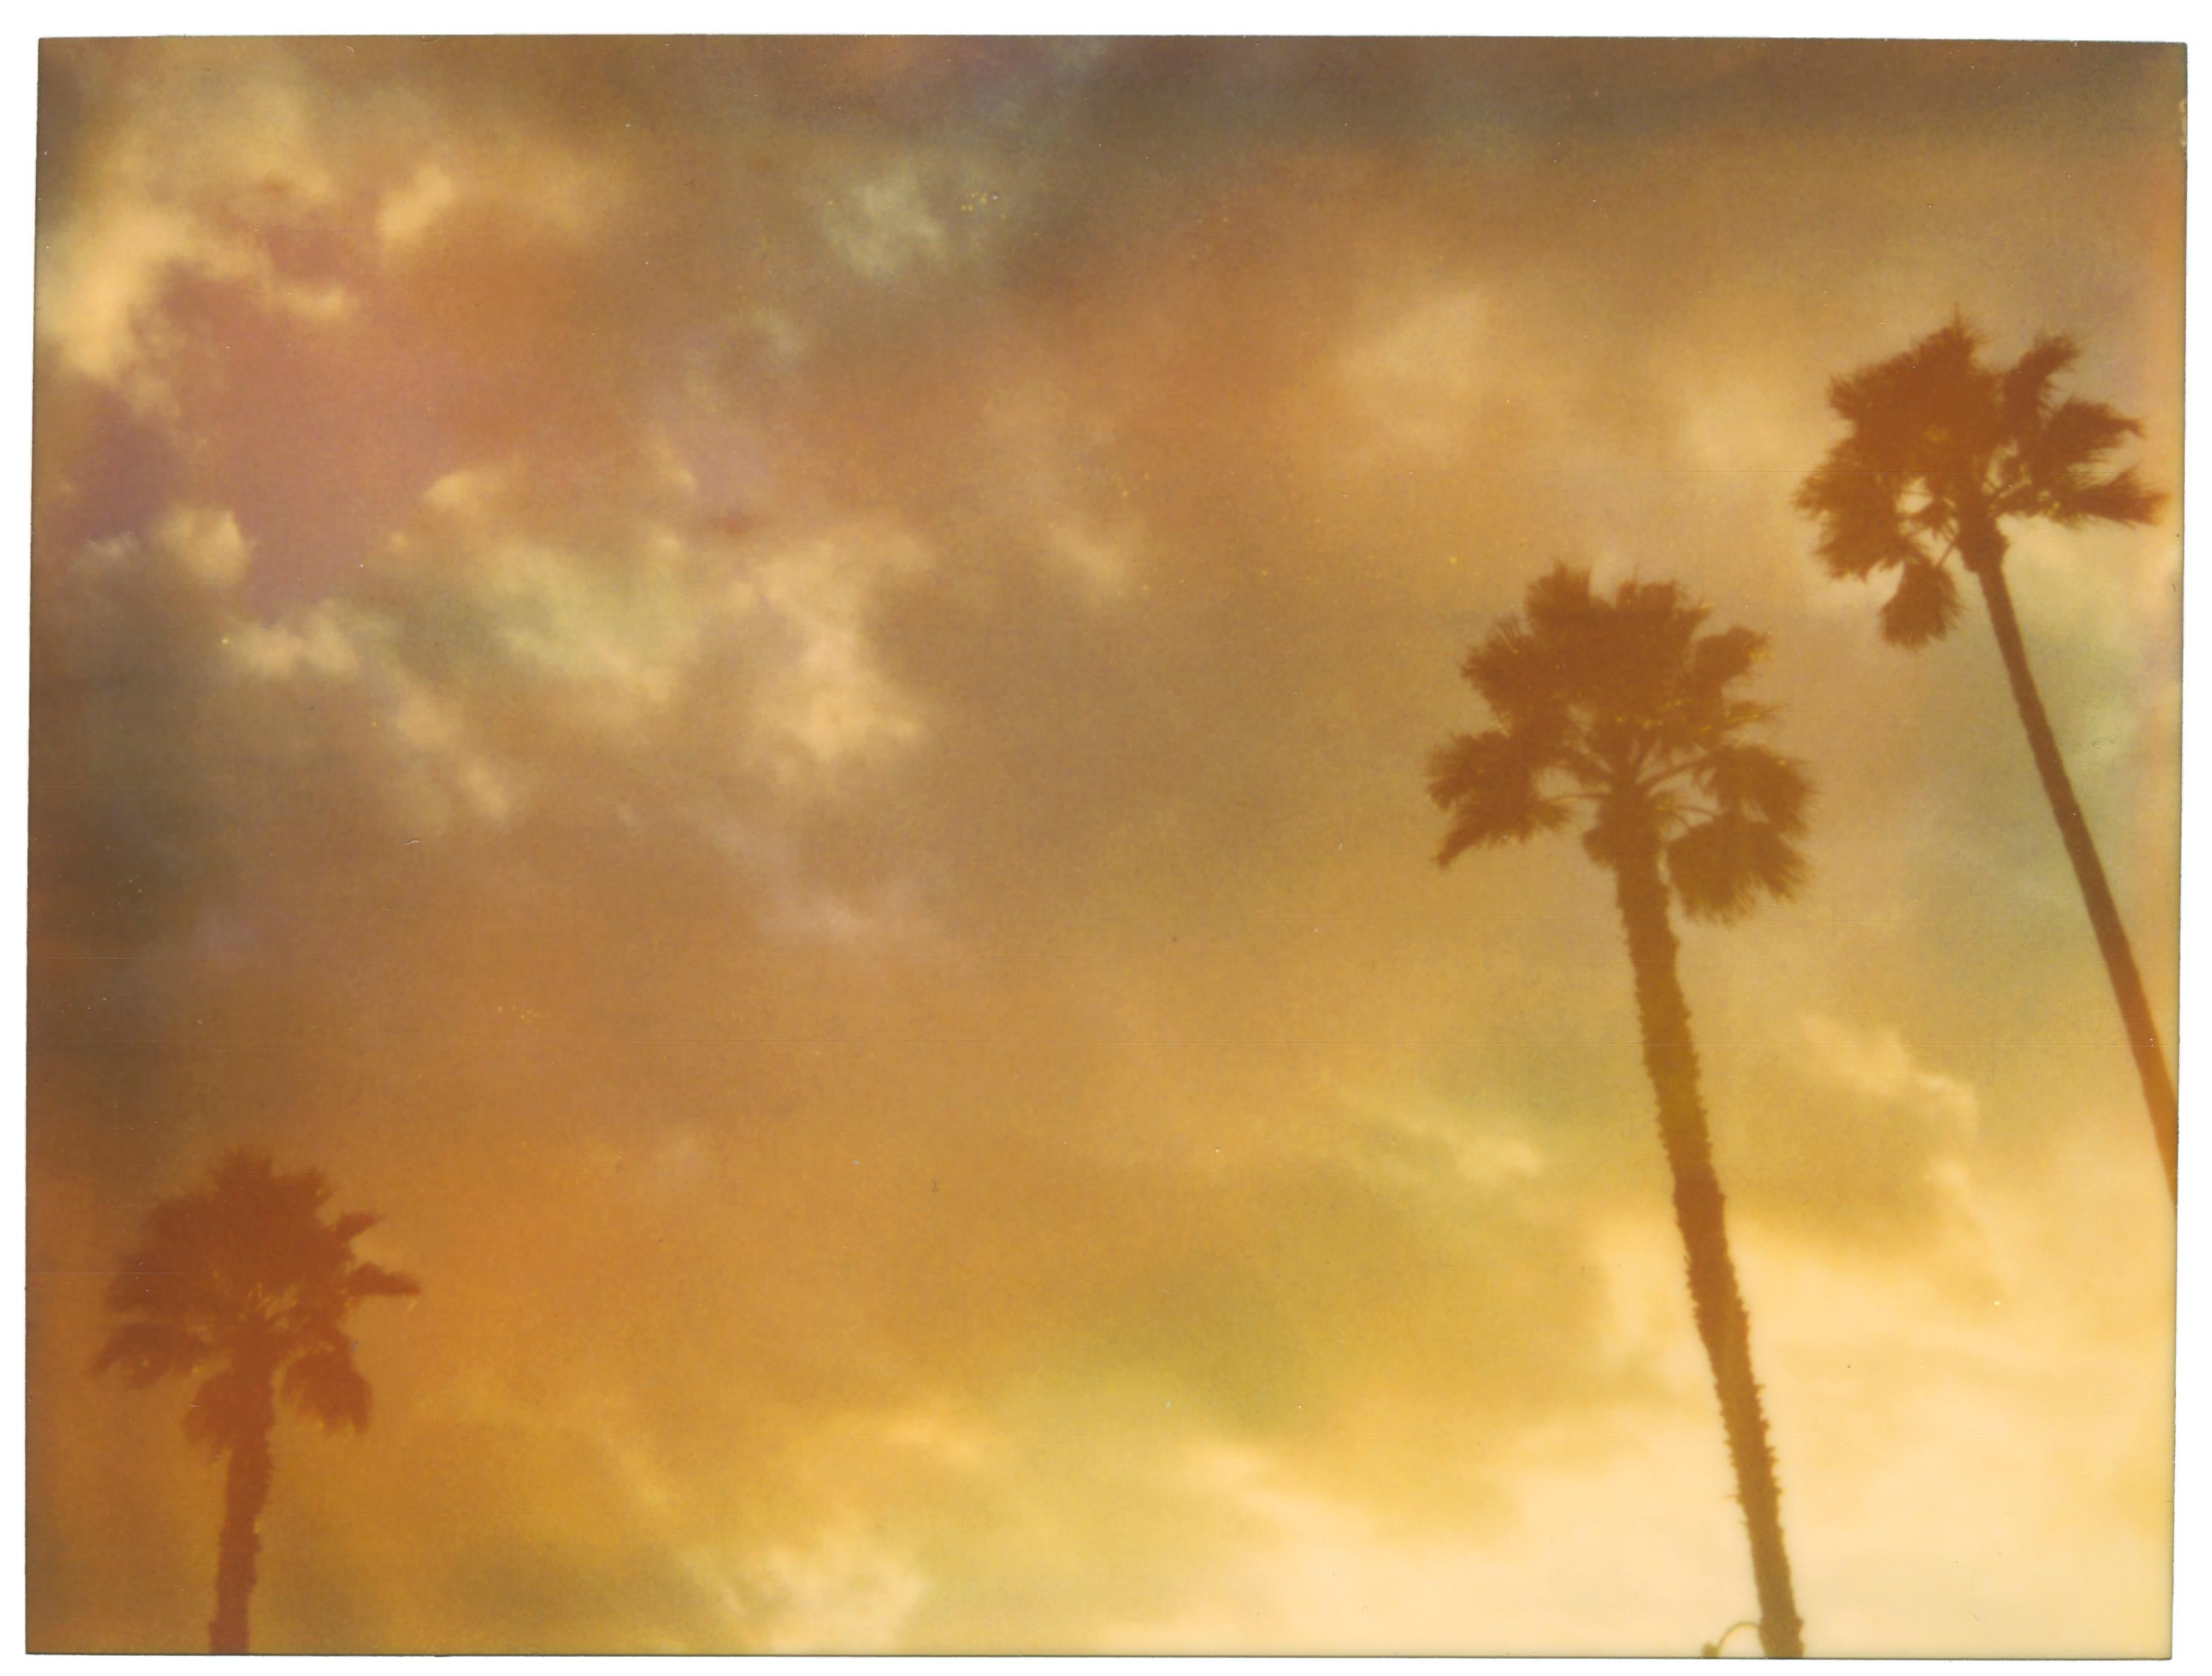 Landscape Photograph Stefanie Schneider - Trois palmiers (Stranger than Paradise) - analogique, impression vintage